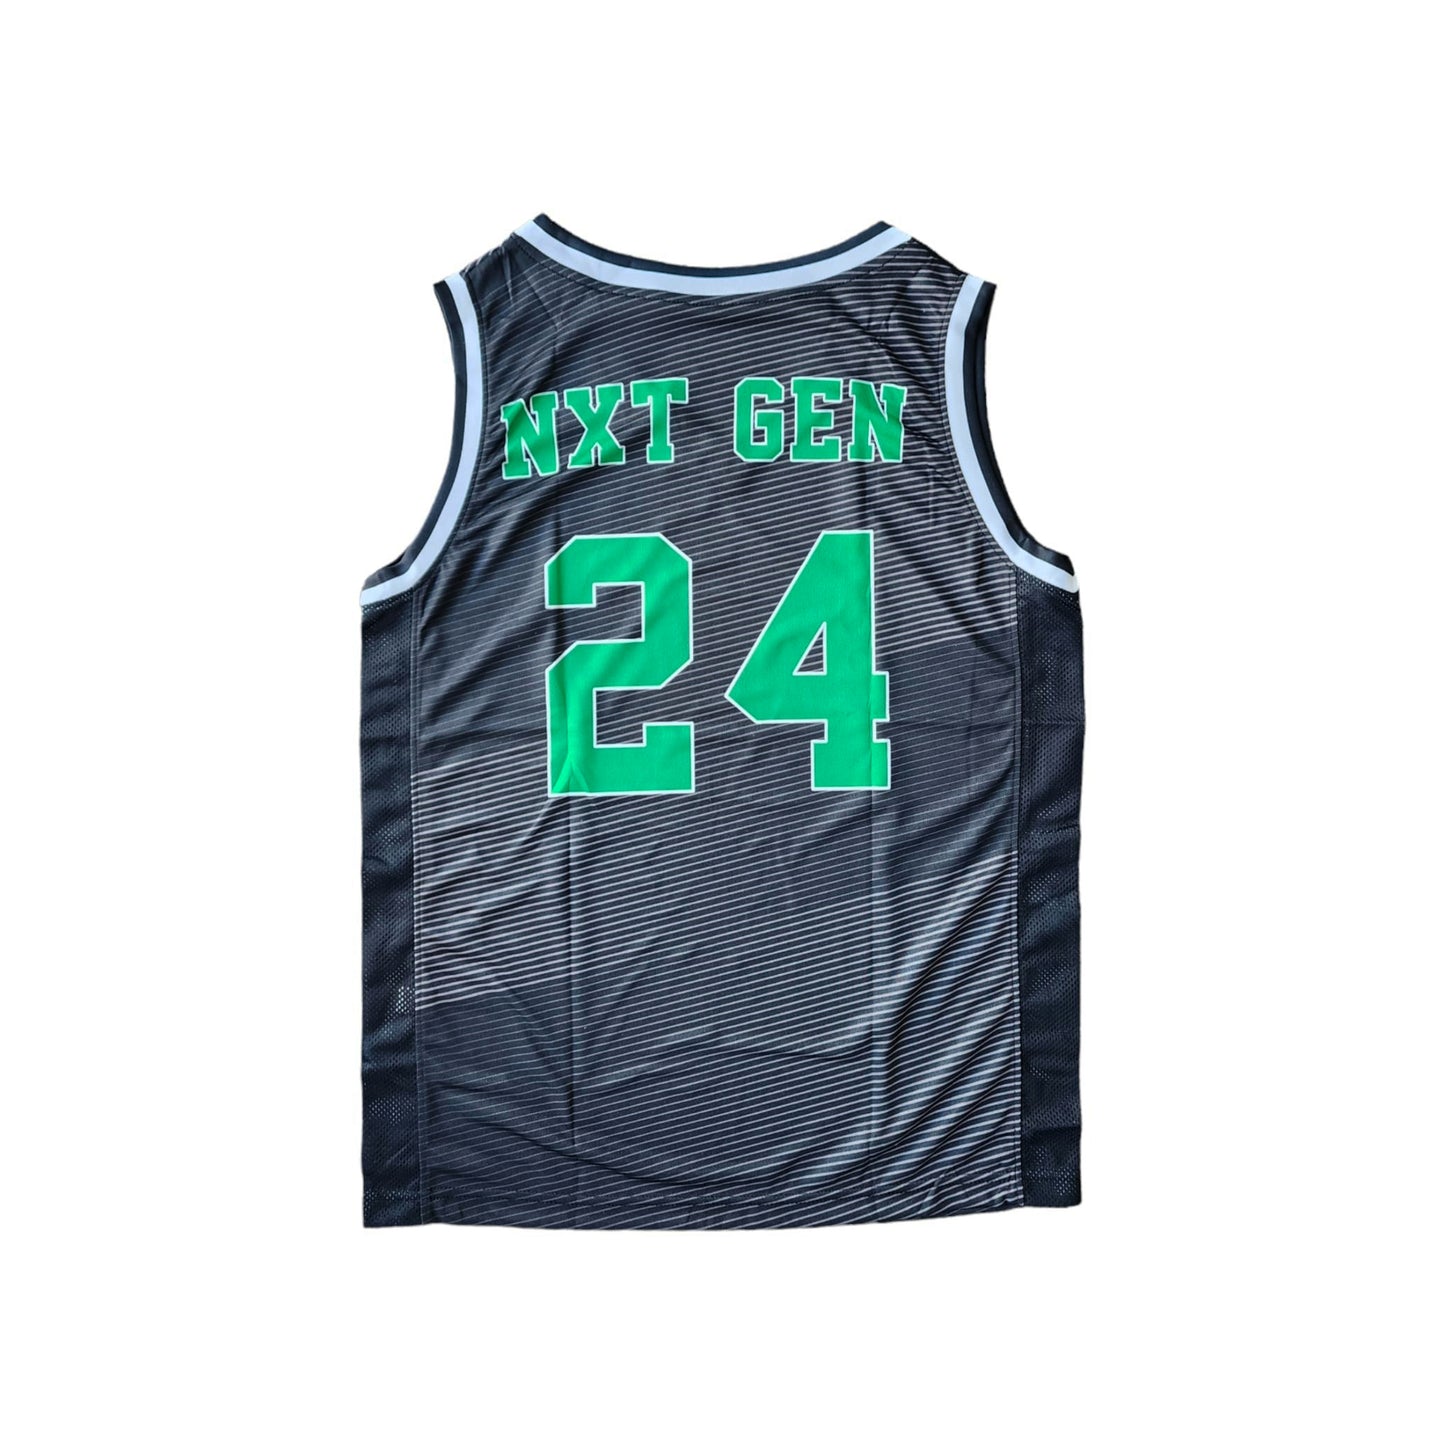 Nxt-Gen Baller Basketball Jersey (Black)